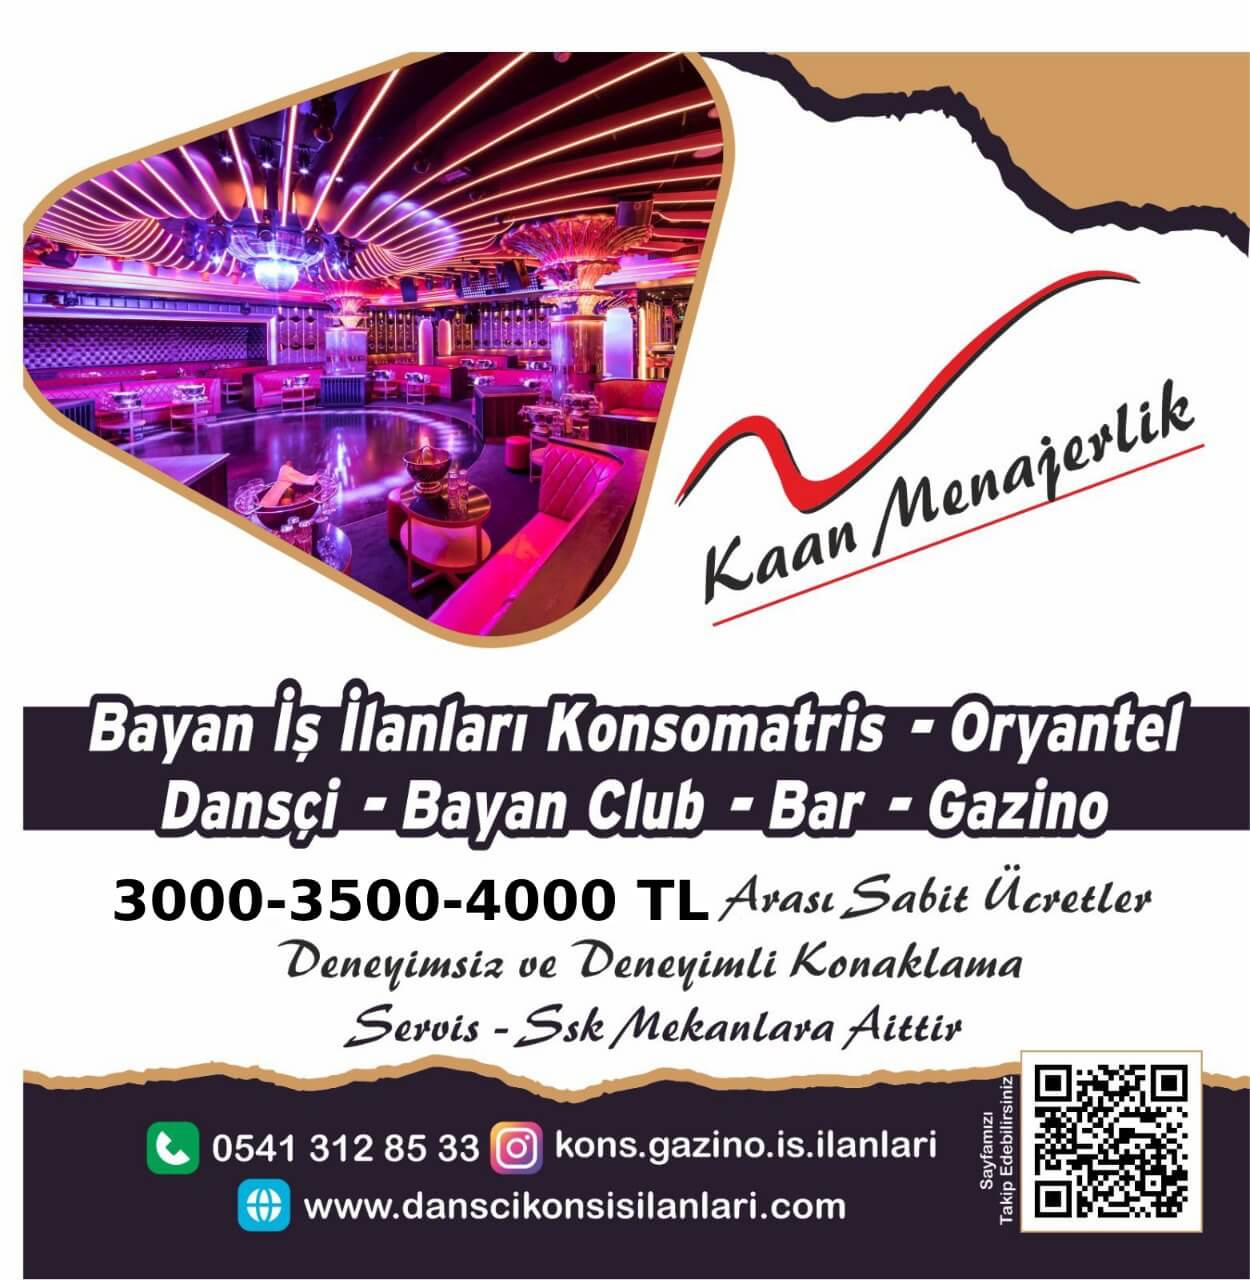 Ankara bayan garson dansçı gazino bar iş ilanları